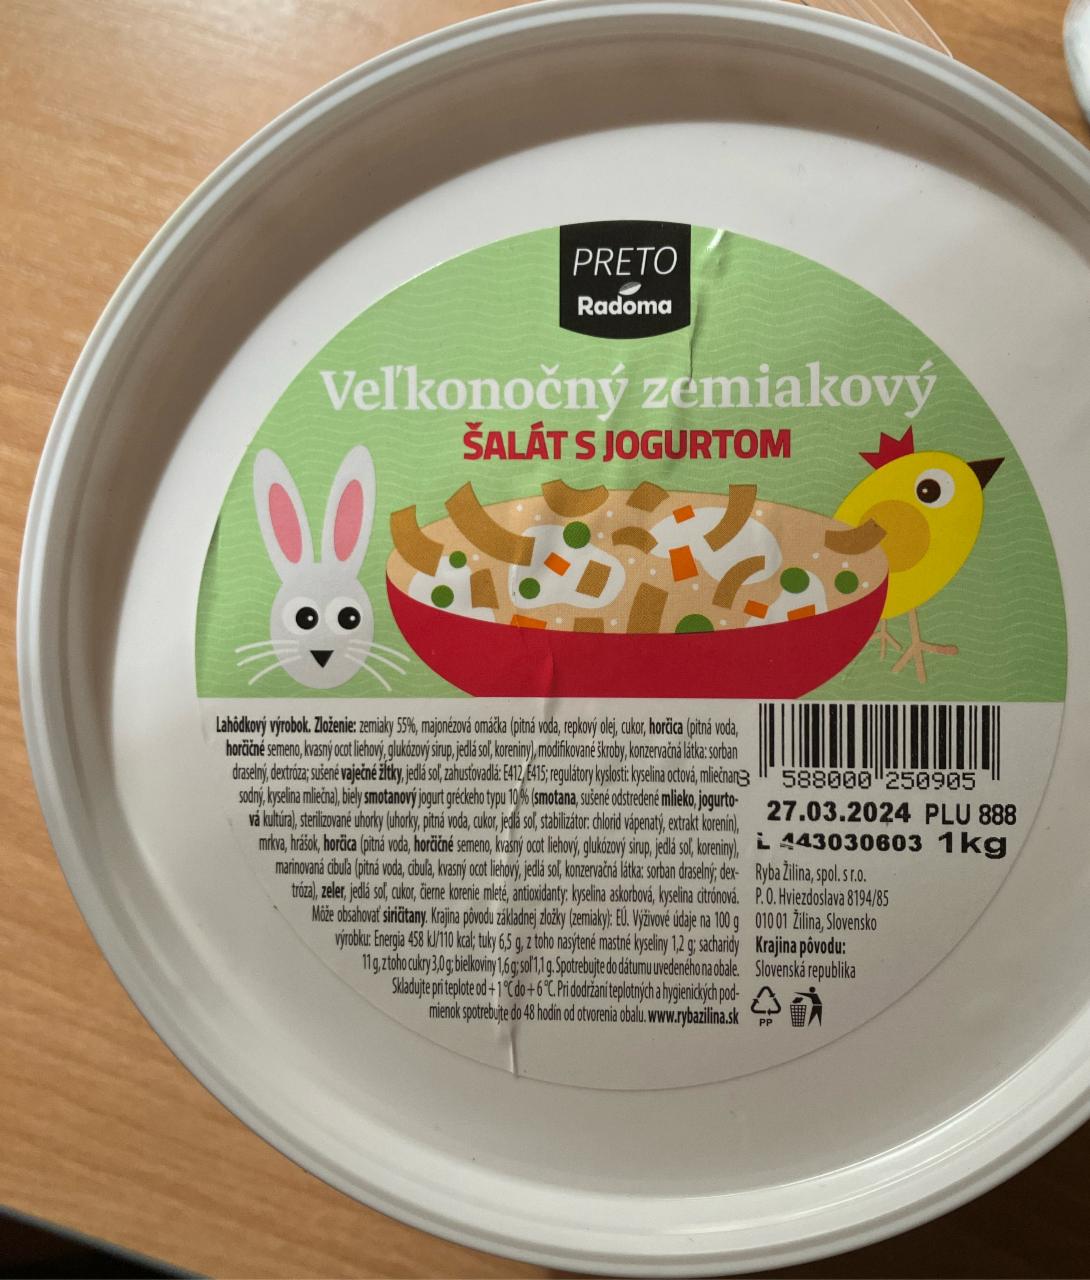 Fotografie - Veľkonočný zemiakový šalát s jogurtom Preto Radoma